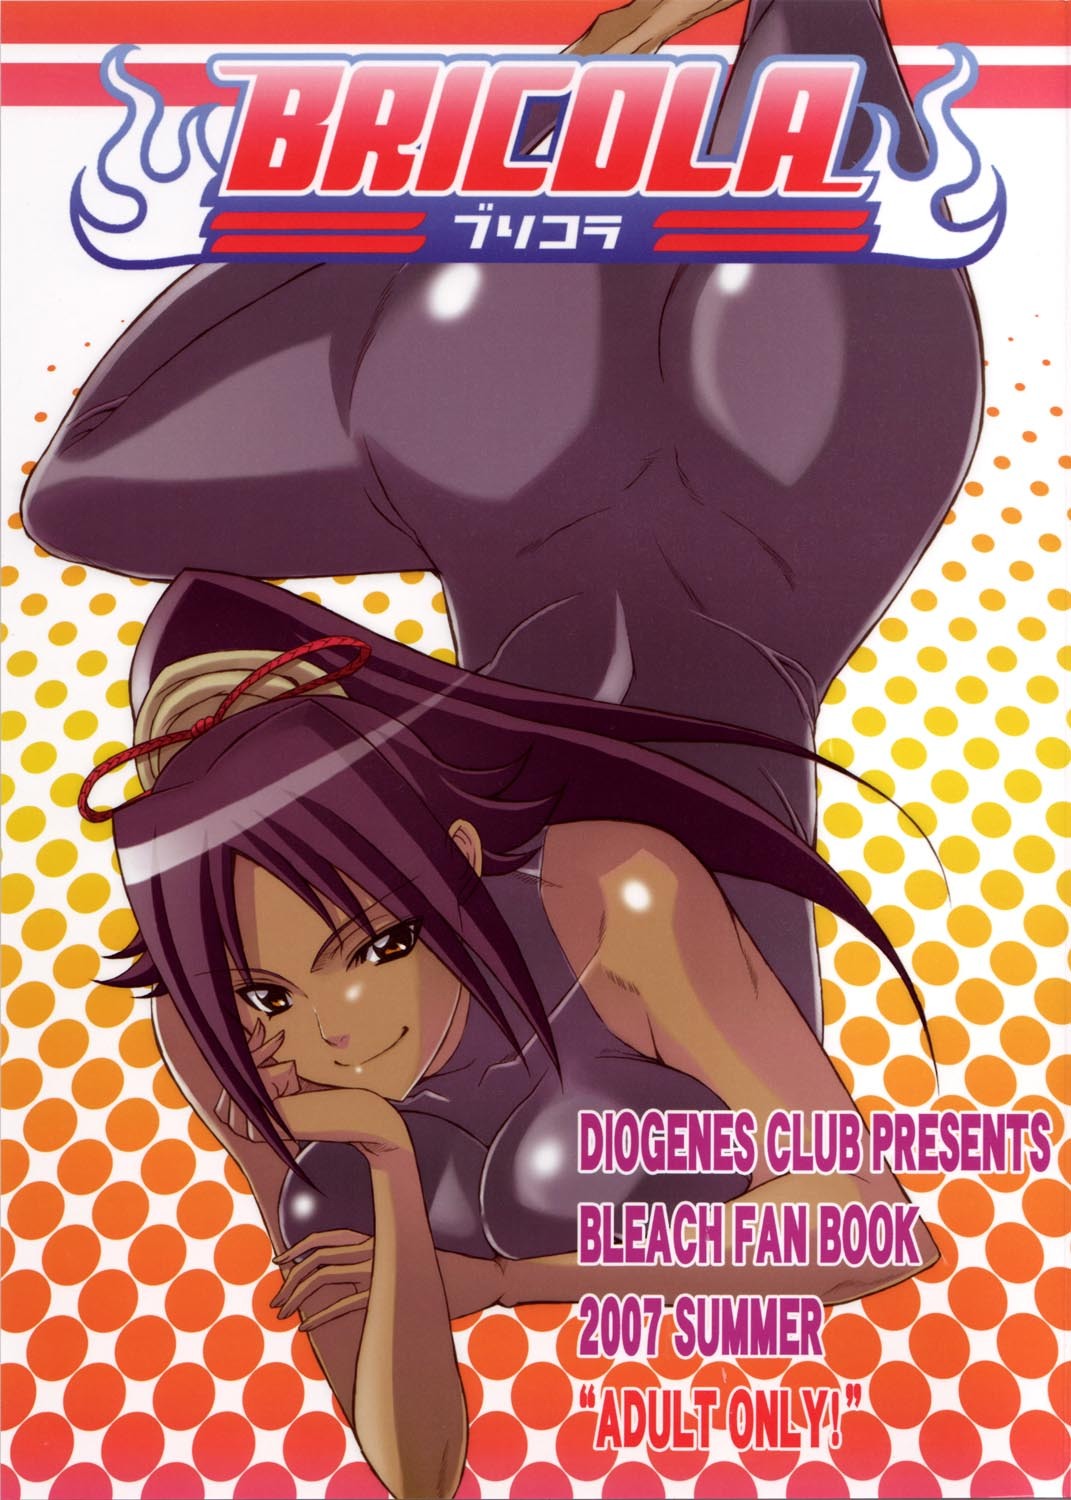 Bleach Shemale Manga - Bleach - Hentai Manga, Doujins, XXX & Anime Porn